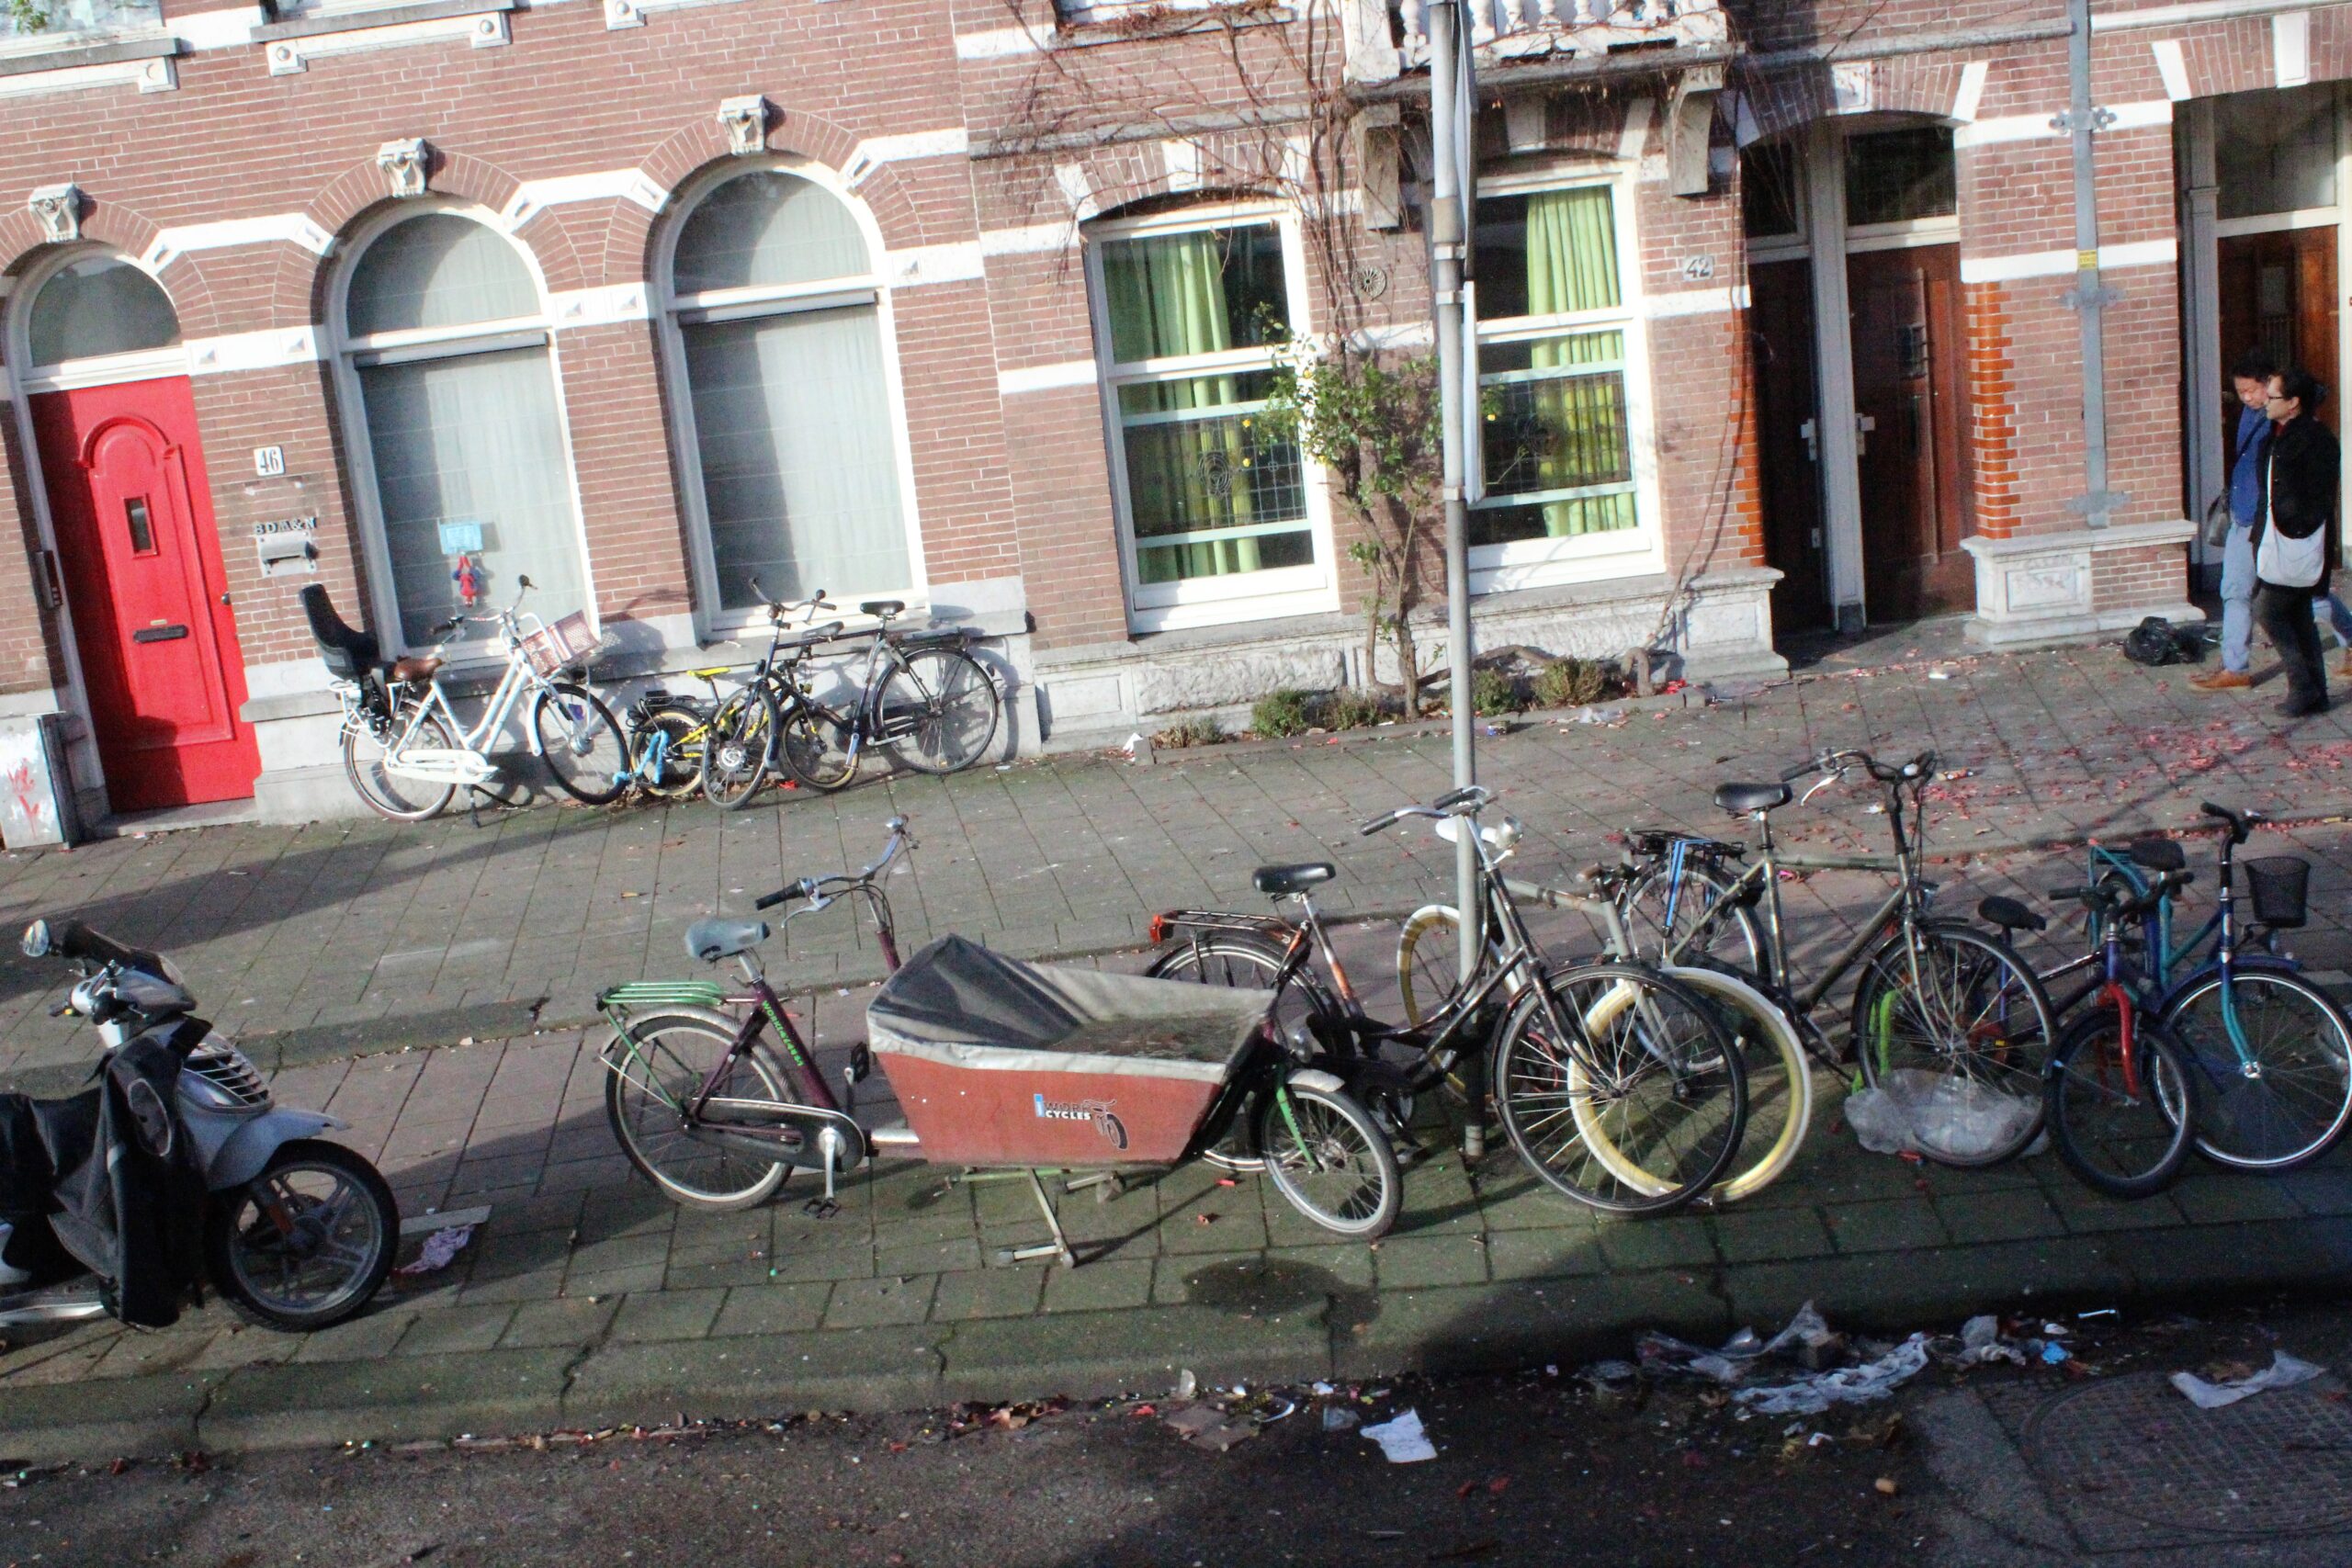 Lire la suite à propos de l’article Amsterdam, la ville où les vélos font le trottoir